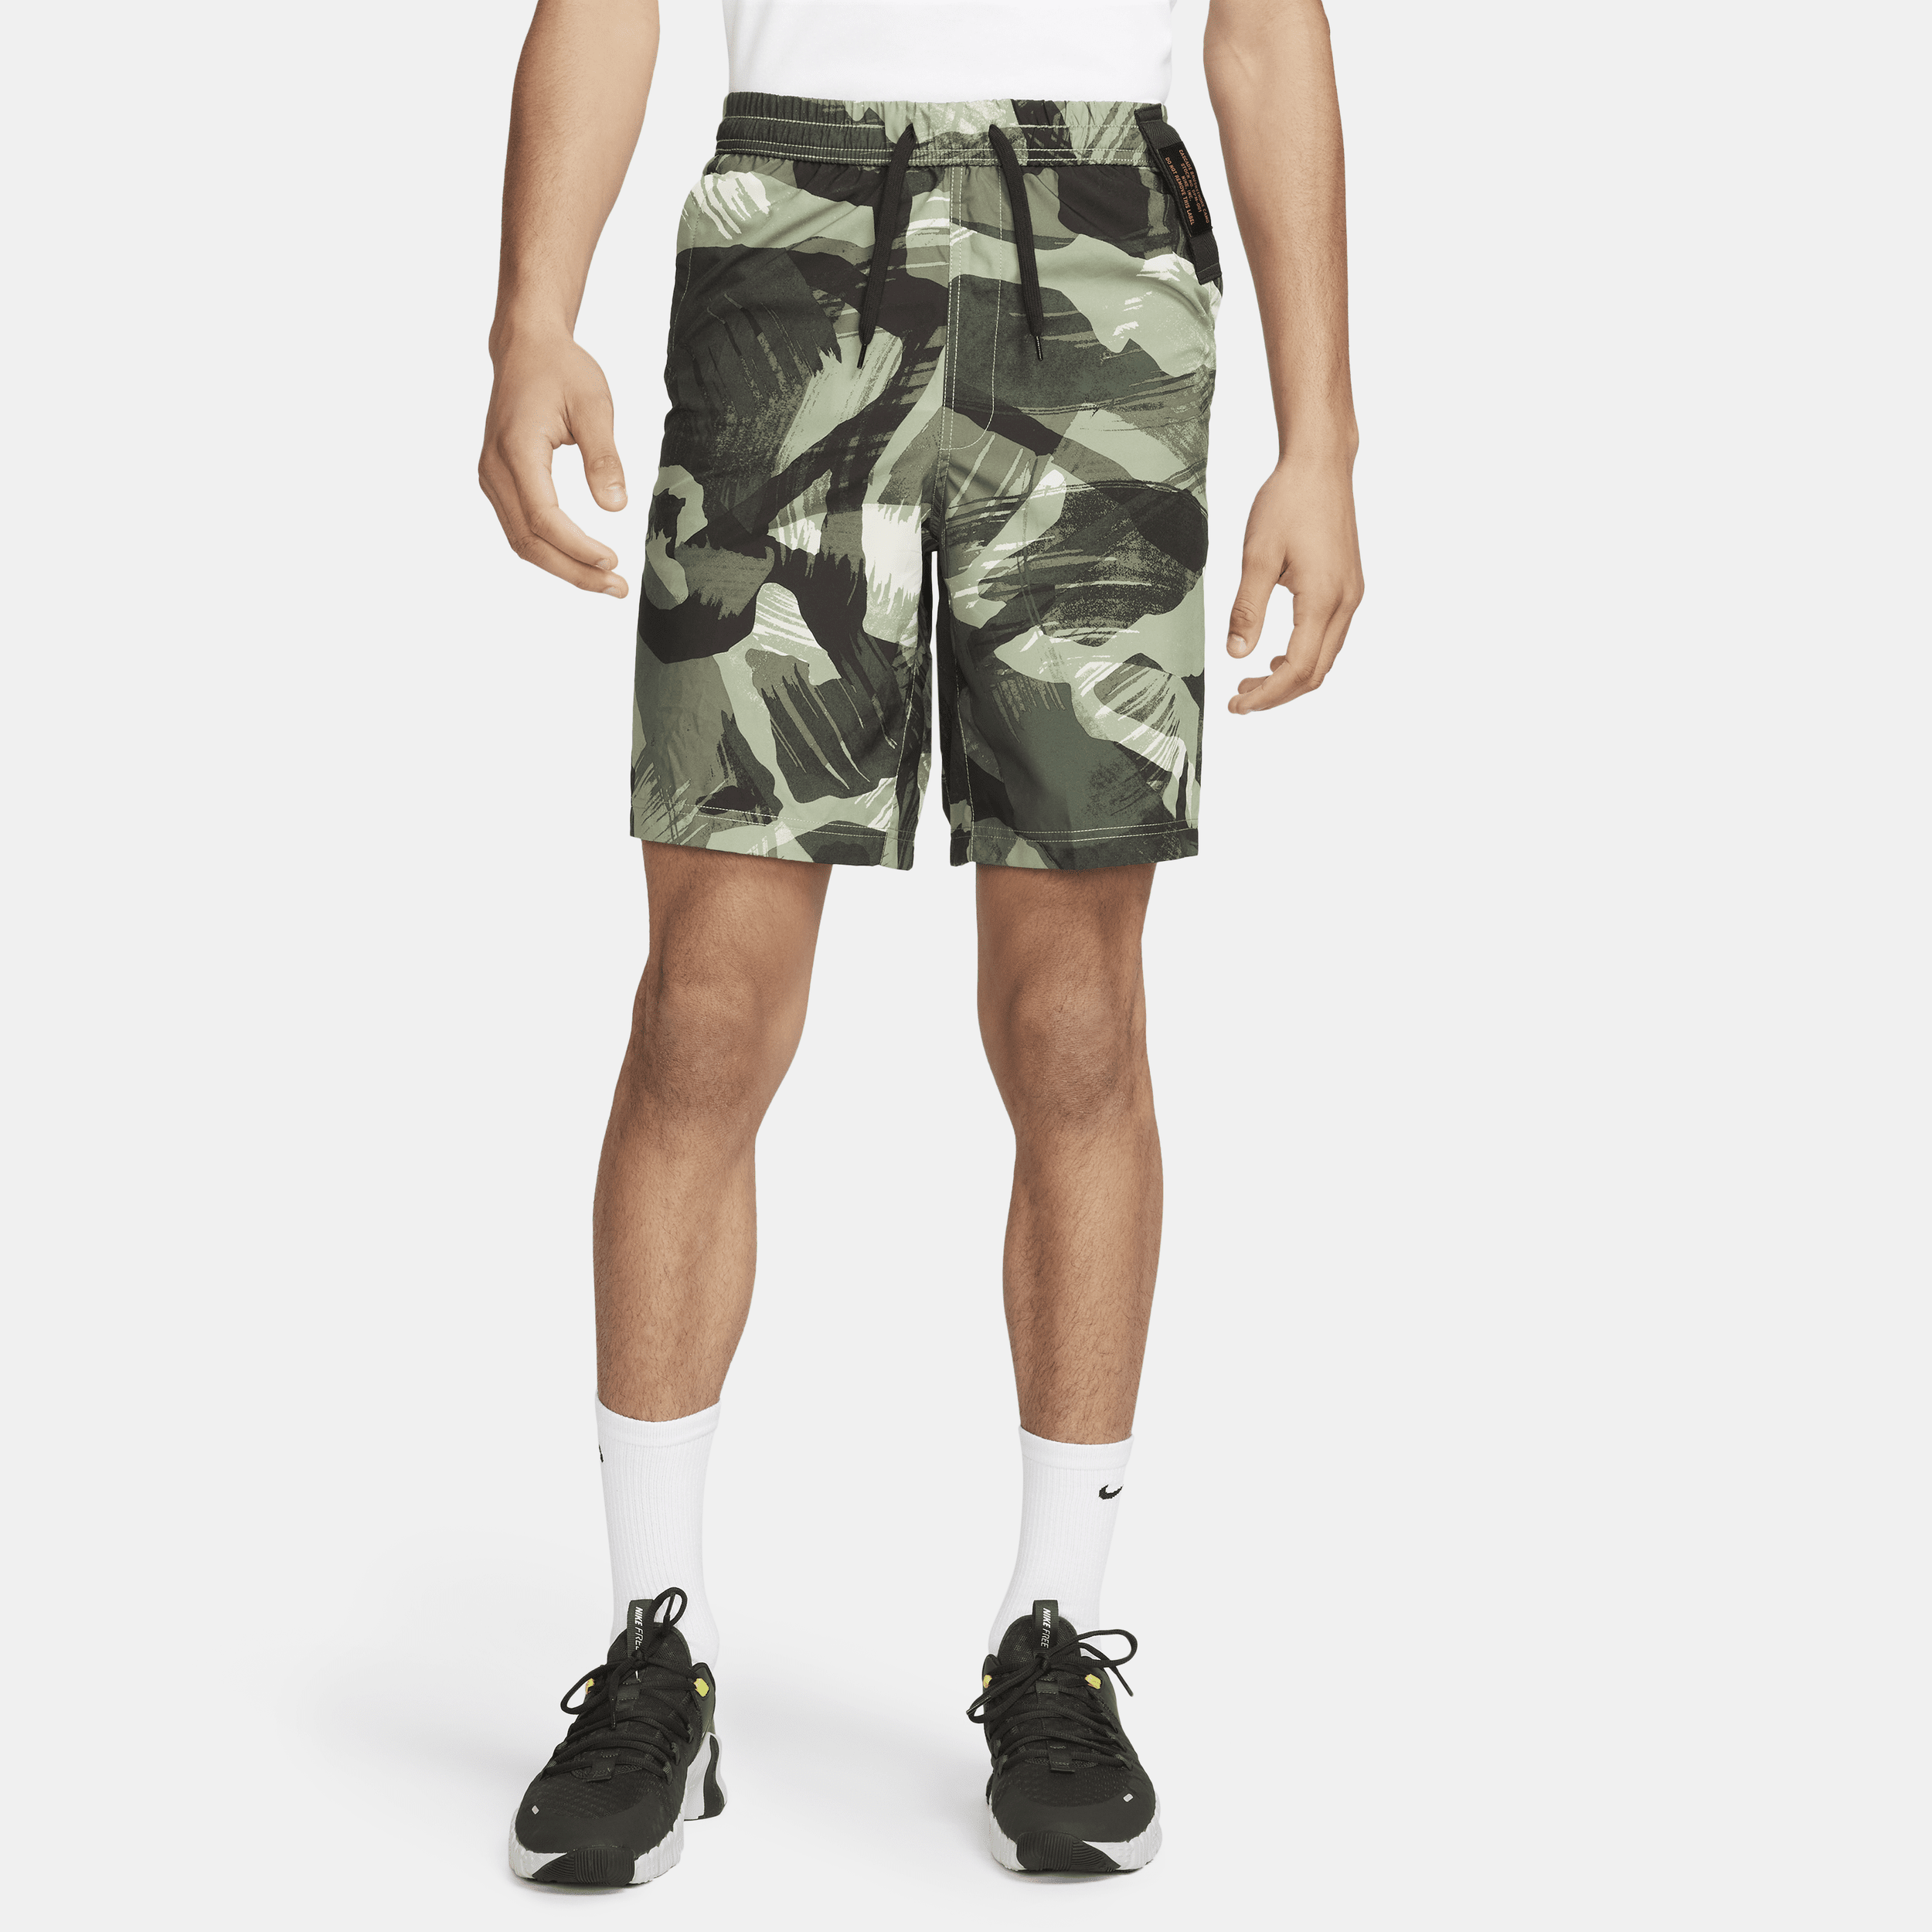 Alsidige Nike Form Dri-FIT-shorts (23 cm) uden for til mænd - grøn